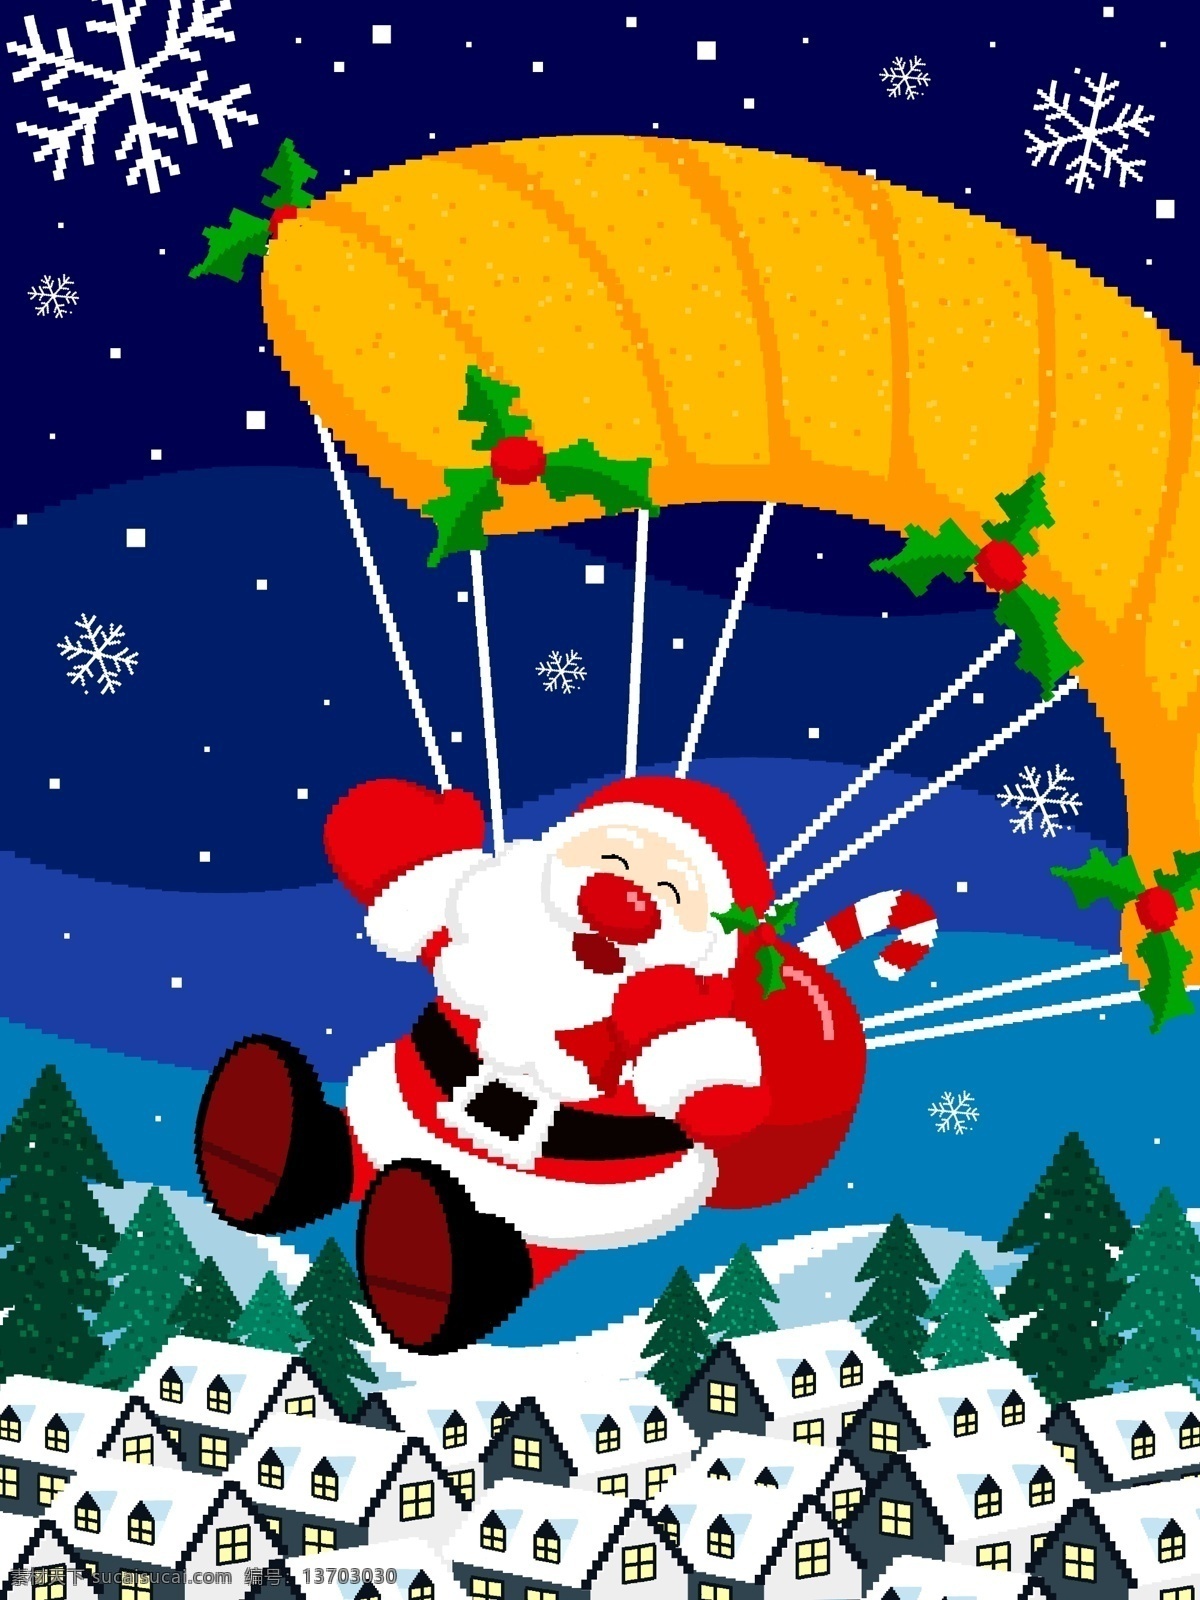 圣诞节 圣诞老人 像素 插画 复古 节日 圣诞 耶诞节 西方 西方节日 晚上 下雪 从天而降 小屋 降落伞 送礼物 派礼物 平安夜 圣诞夜